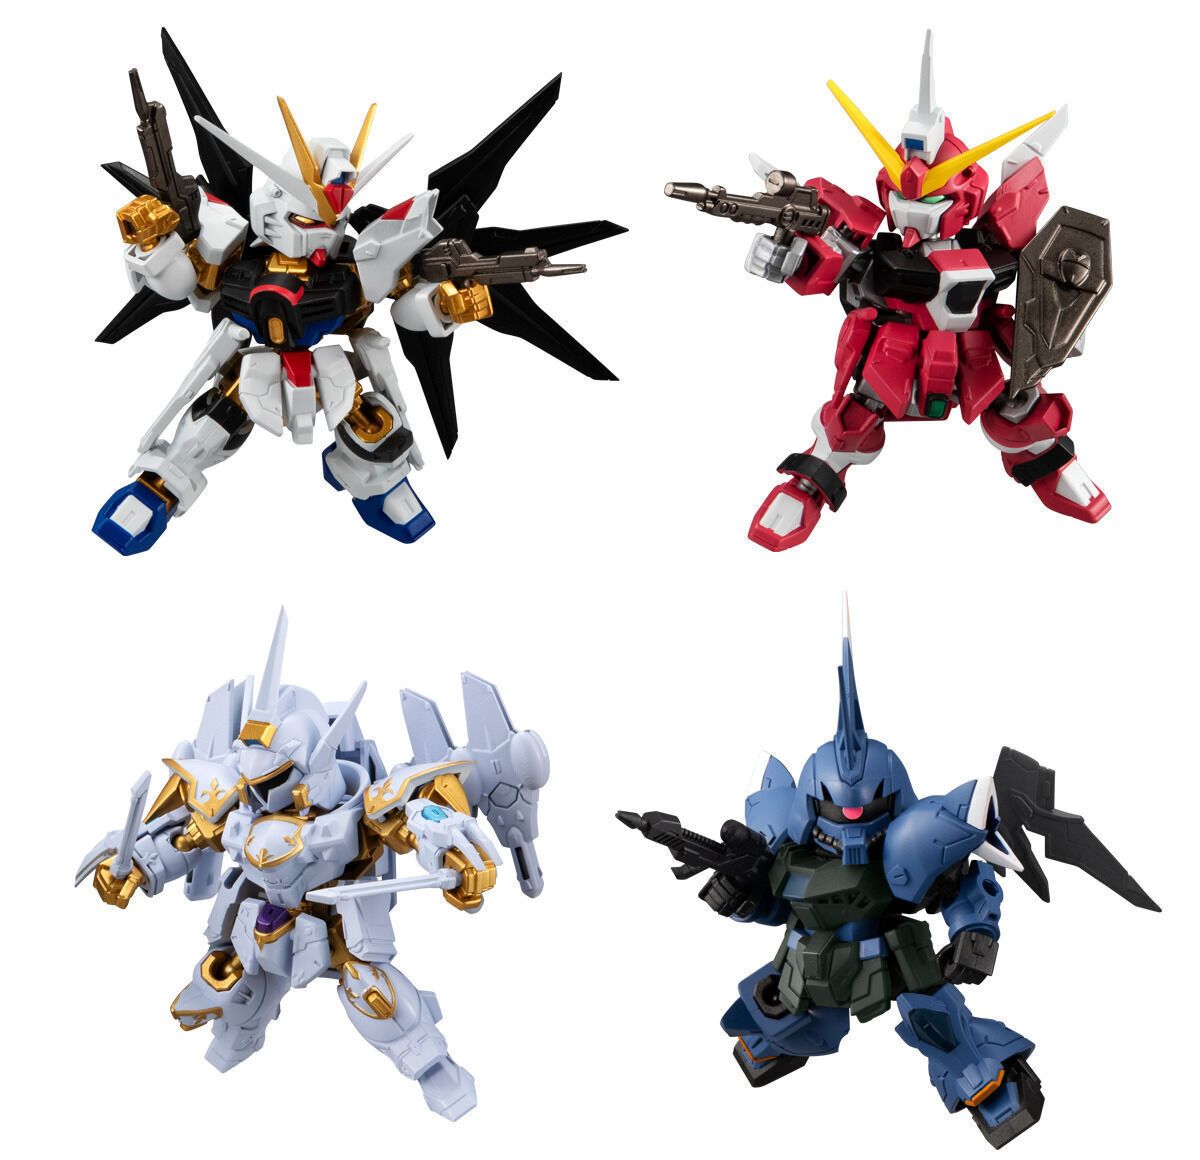 全新Gundam食玩系列开售 套装含10款可动模型